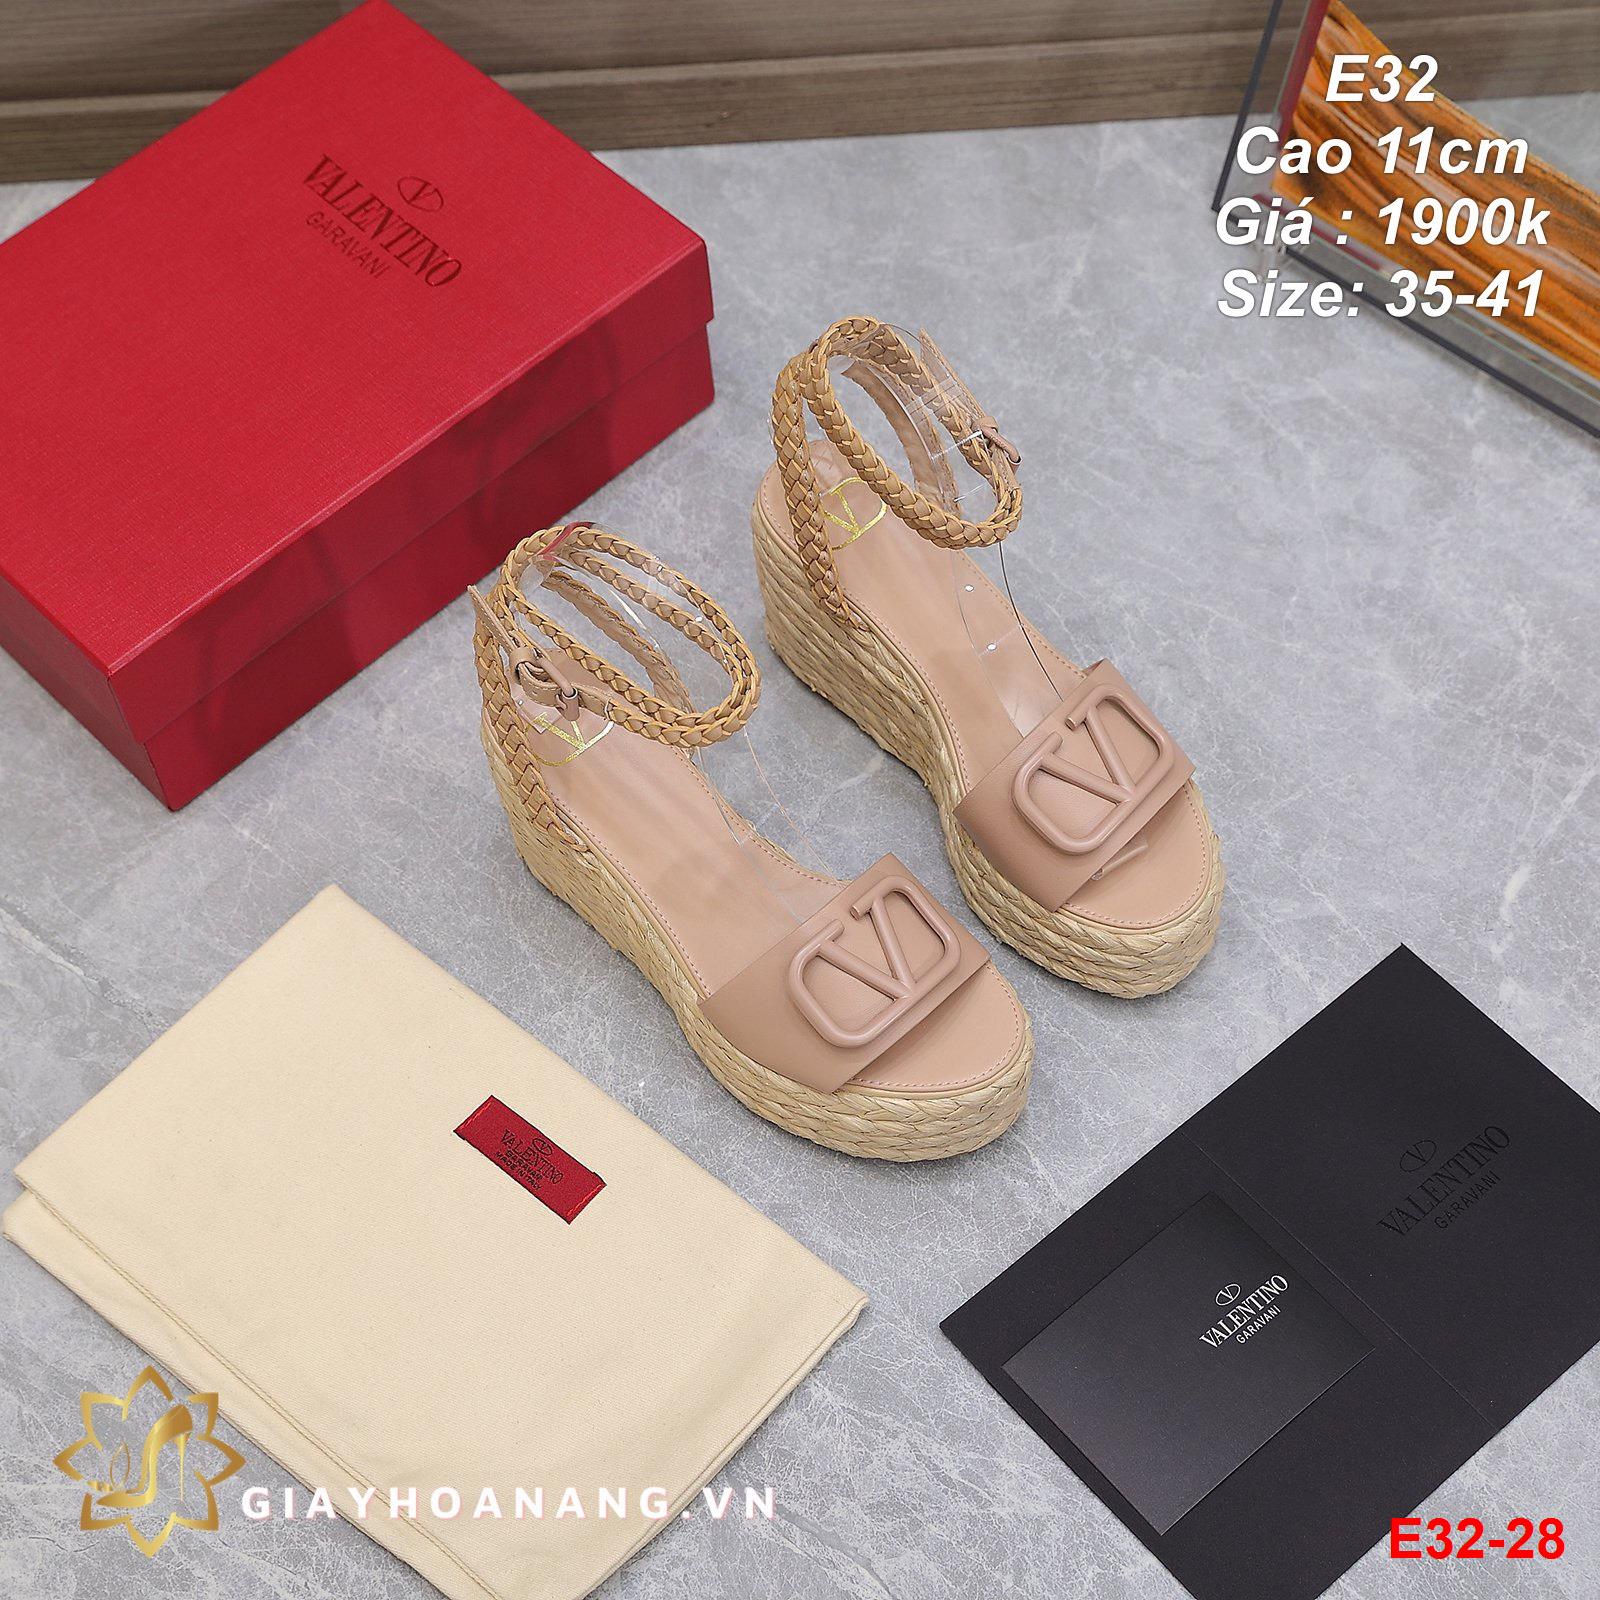 E32-28 Valentino sandal cao 11cm siêu cấp